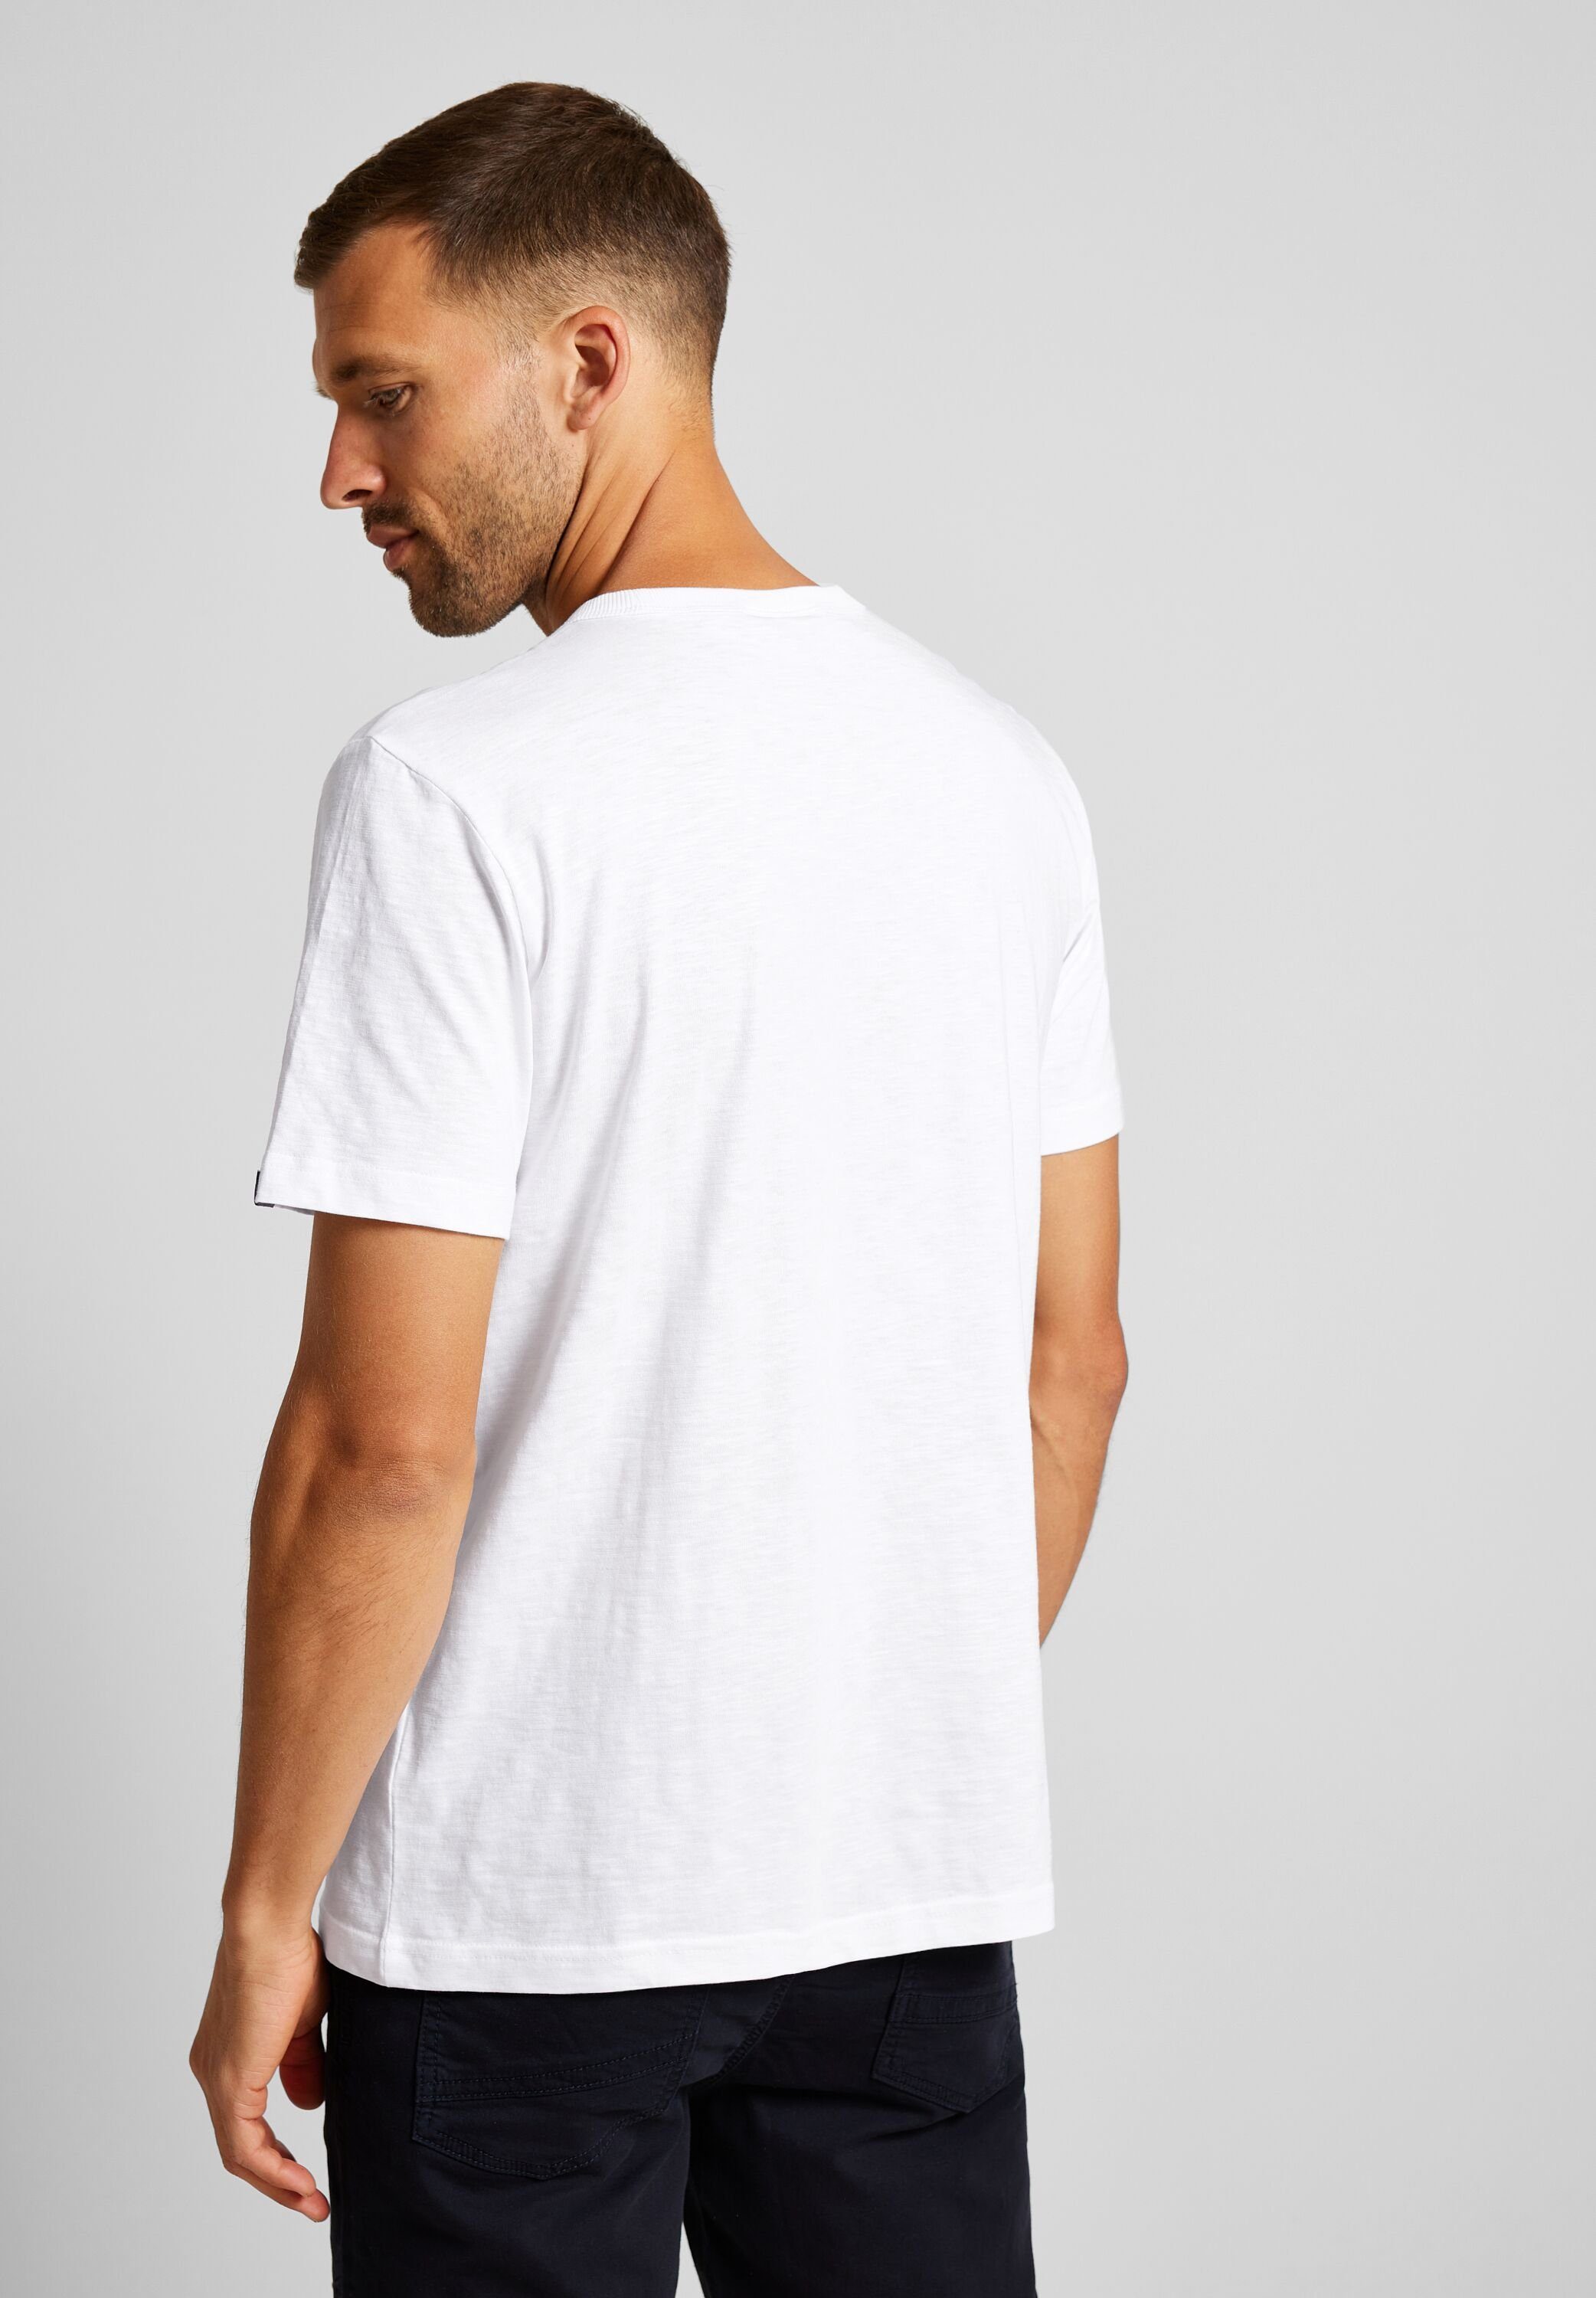 Melange STREET Optik in ONE White T-Shirt MEN